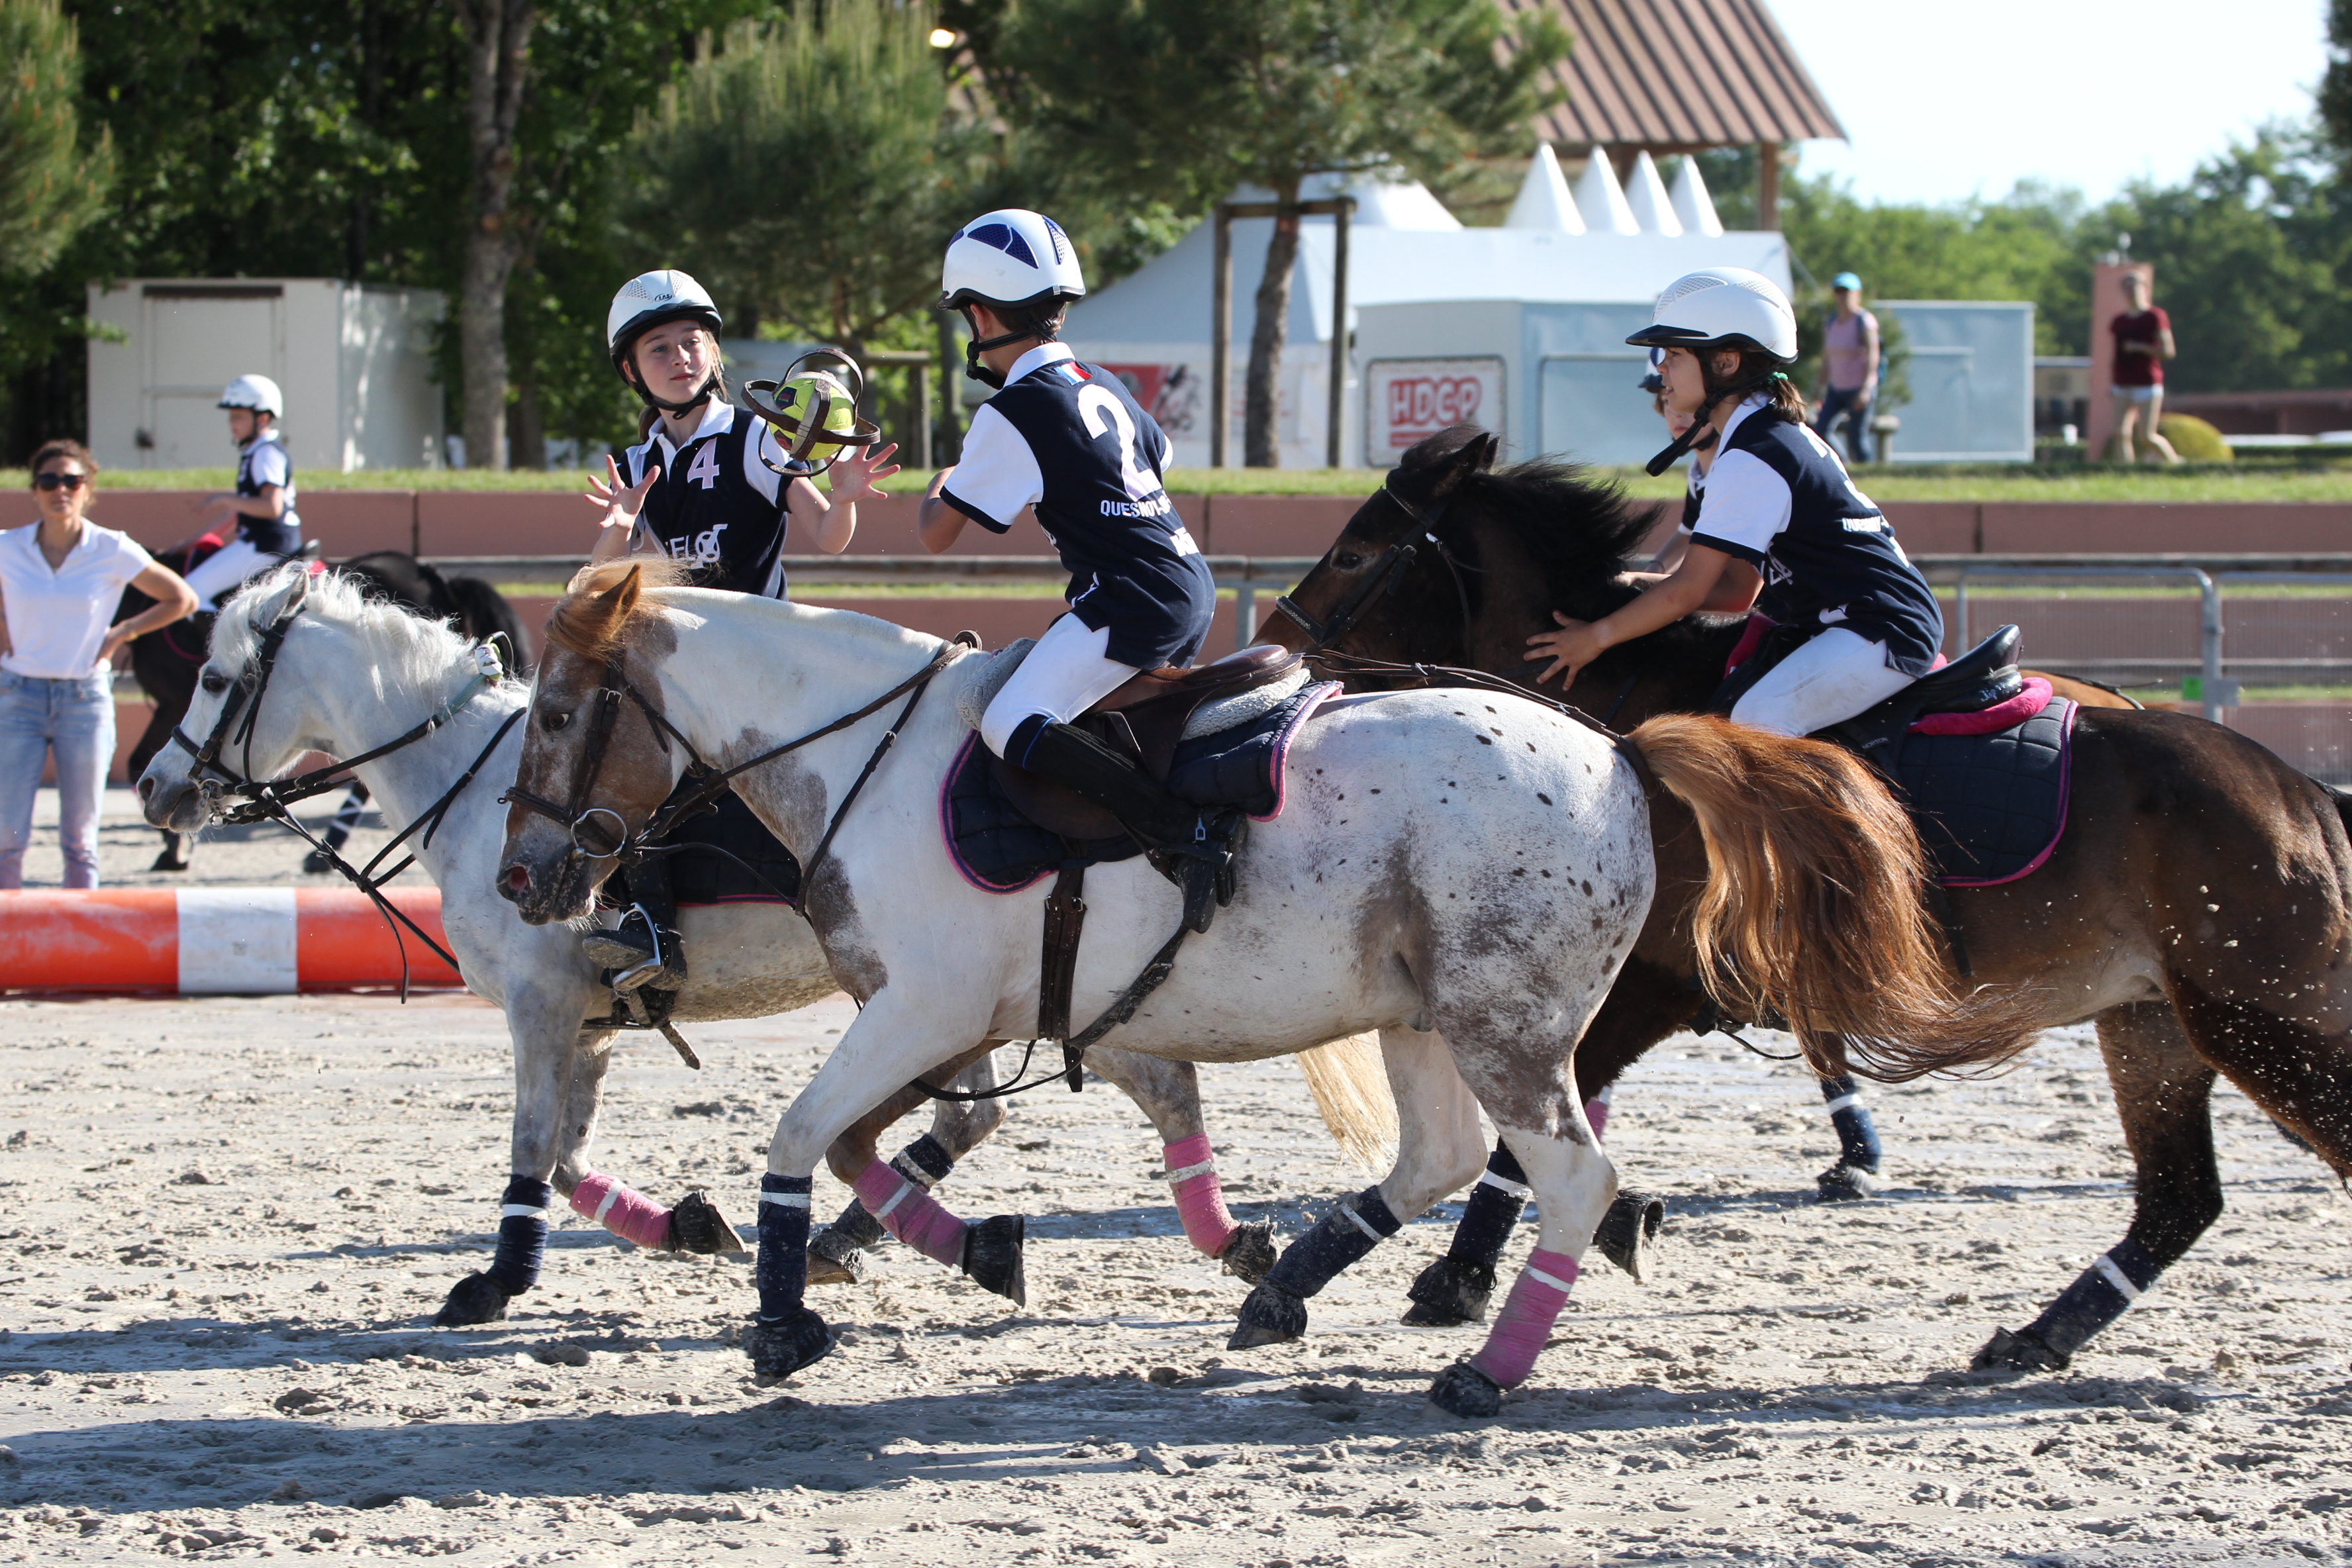 L'équitation western : Les bonnes pratiques et équipement à respecter -  Randonné Equestre Dordogne : Centre d'équitation de Nouvelle Aquitaine